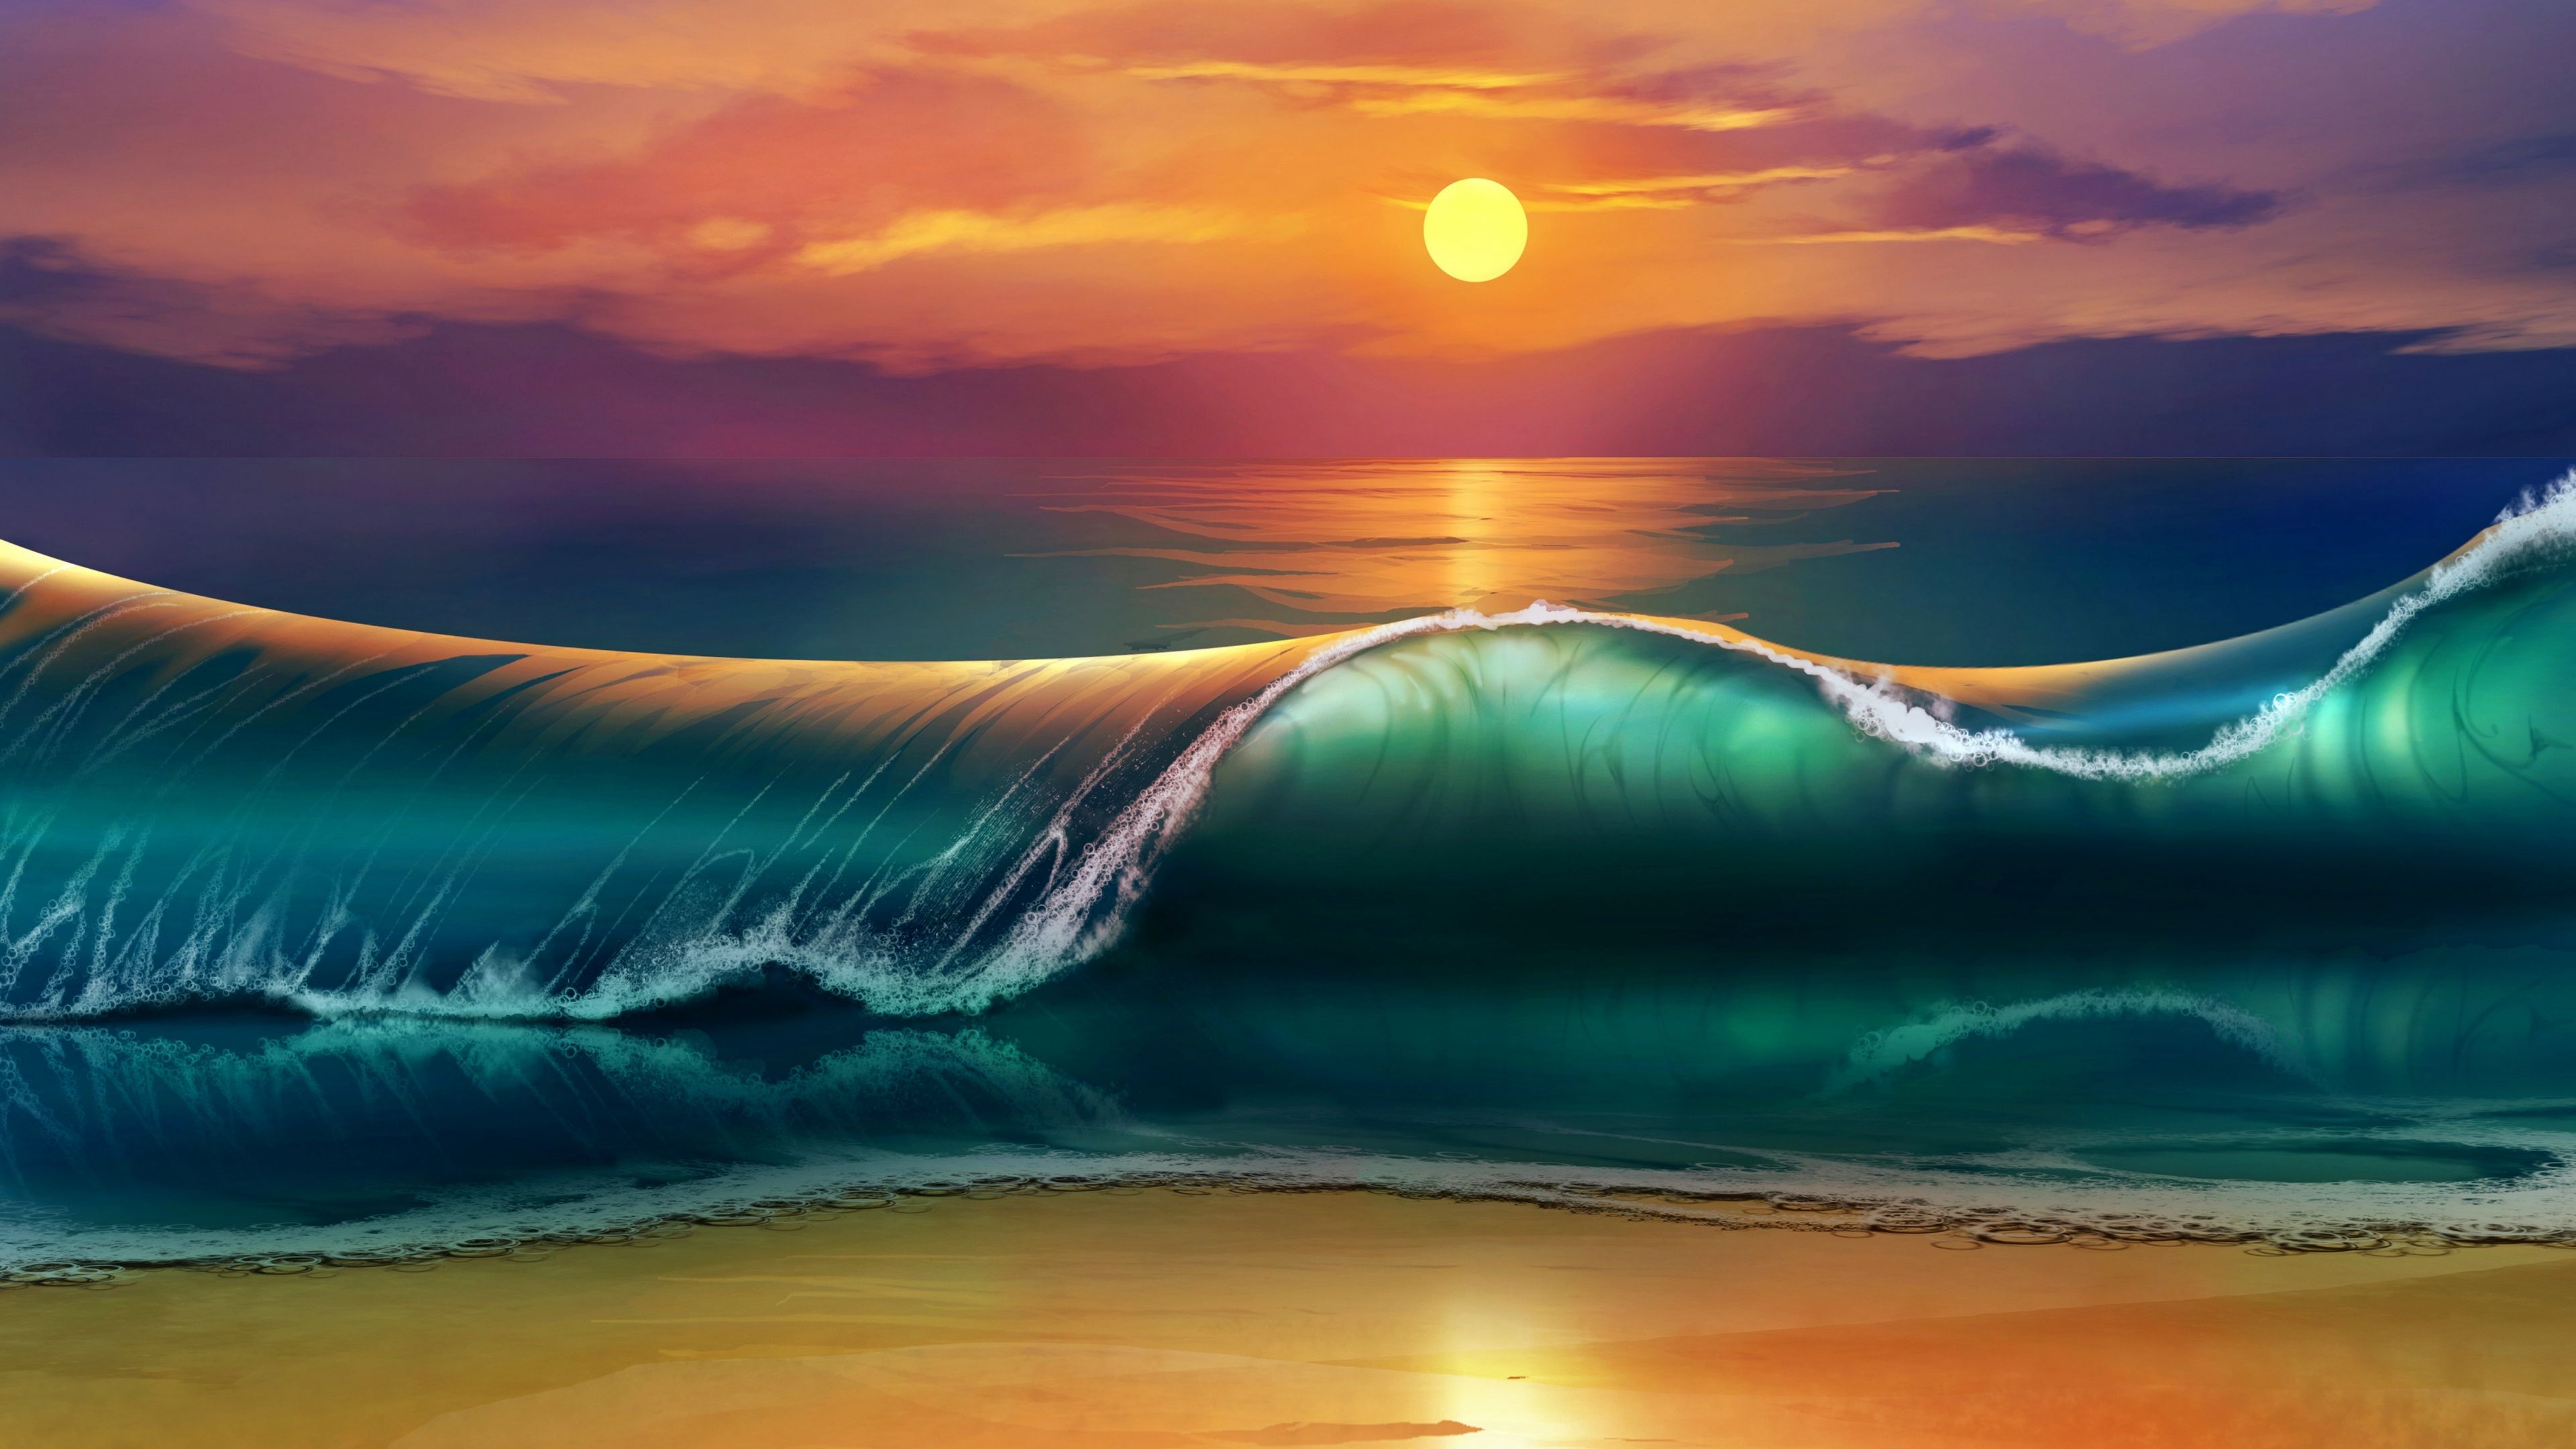 4k Sunset Wallpaper Ocean Waves